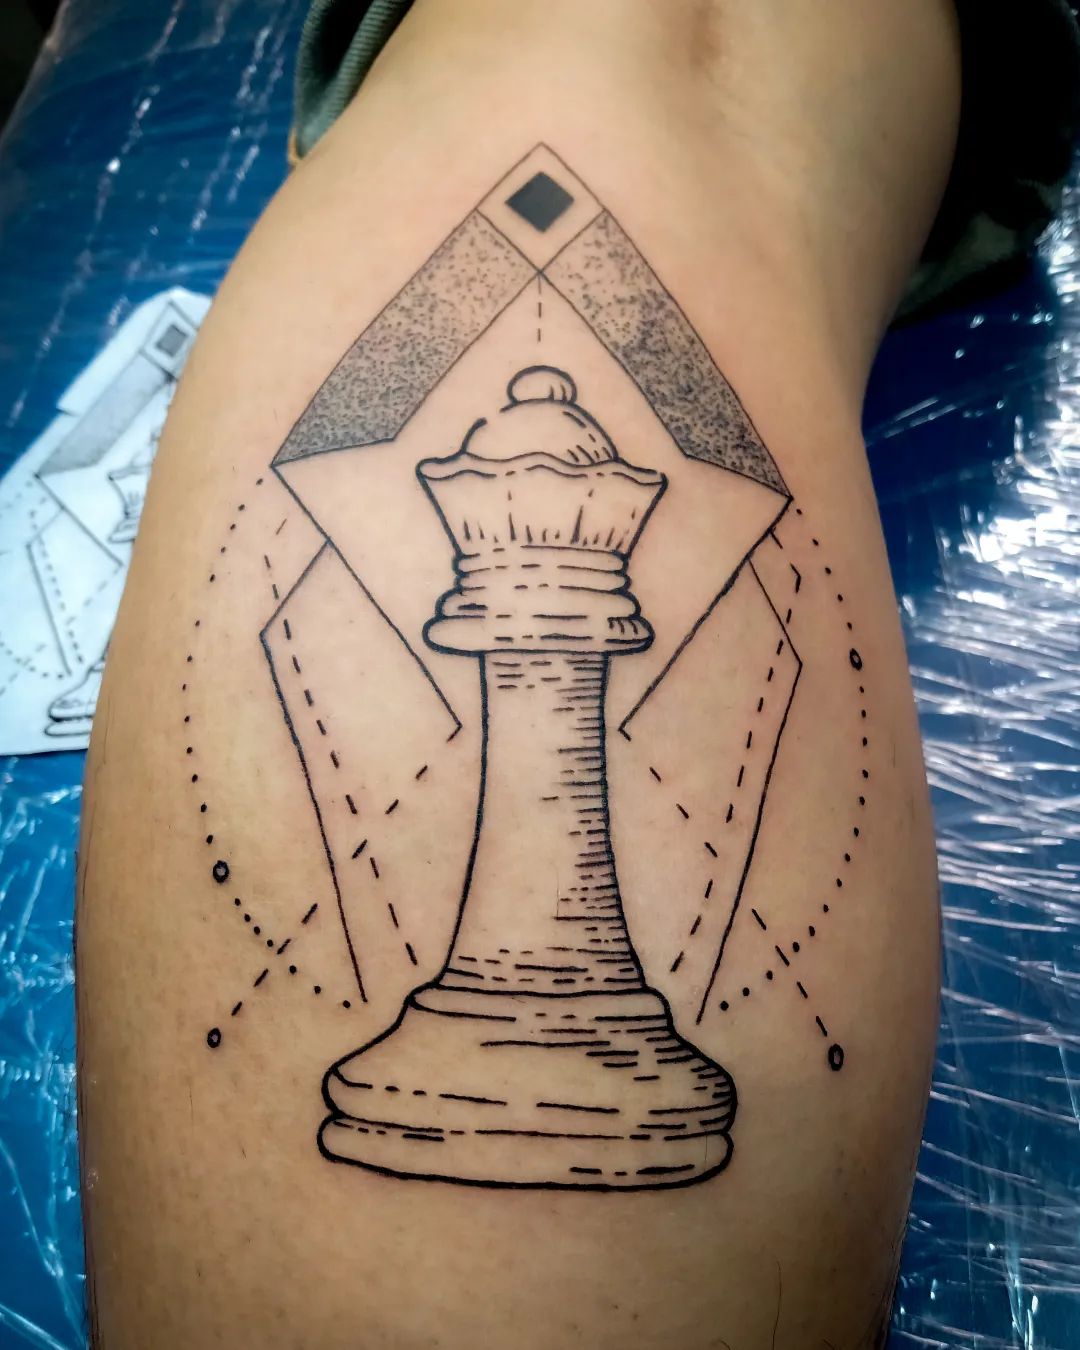 Tatuaje de ajedrez en la pantorrilla